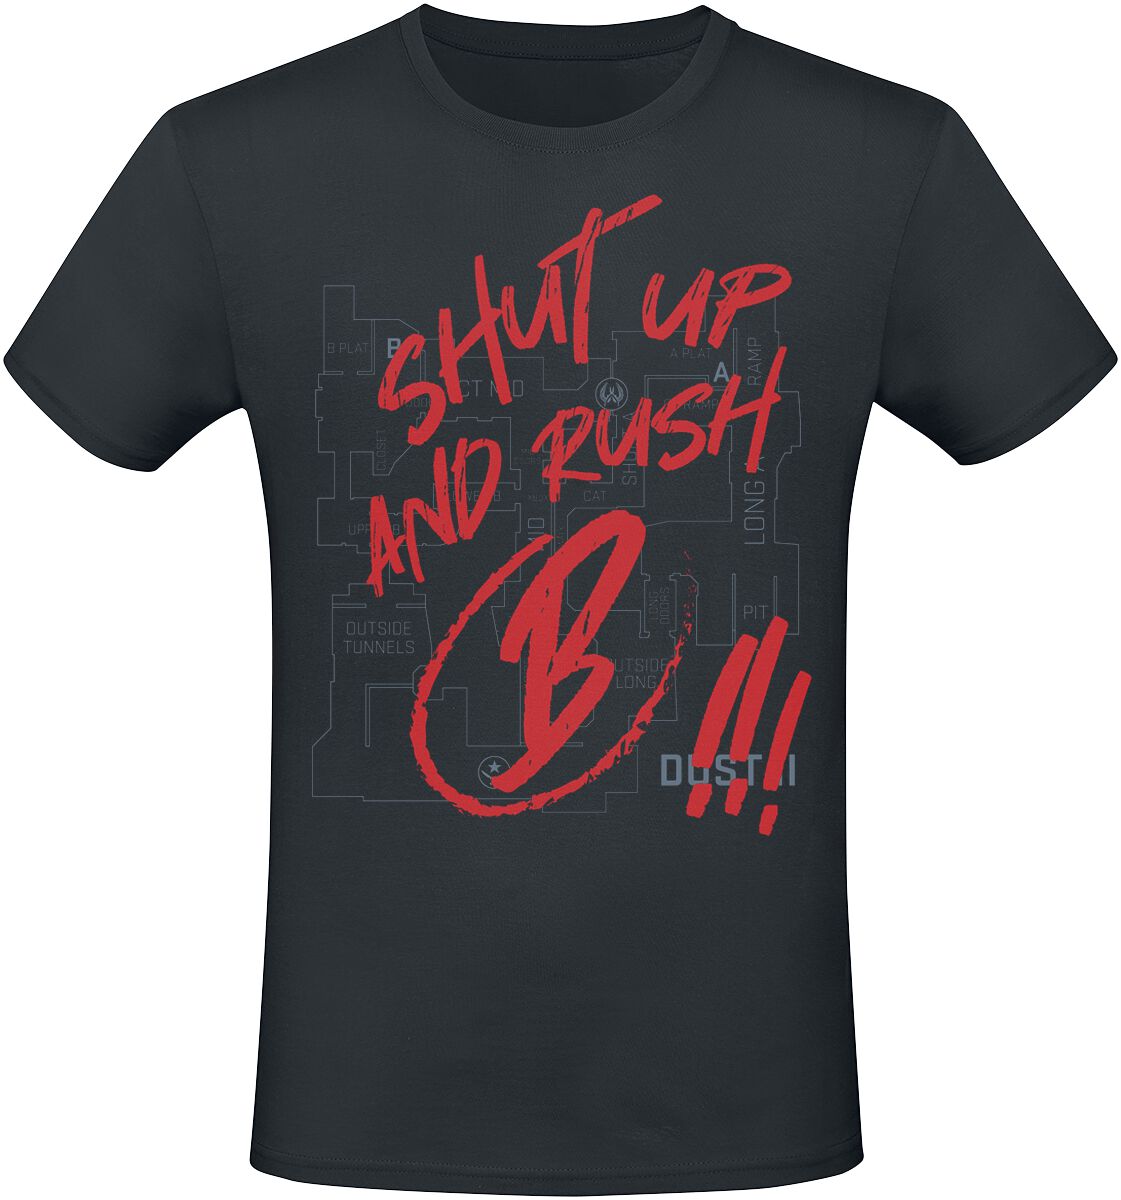 Counter-Strike - Gaming T-Shirt - 2 - Shut Up And Rush B !!! - S bis XXL - für Männer - Größe L - schwarz  - EMP exklusives Merchandise!